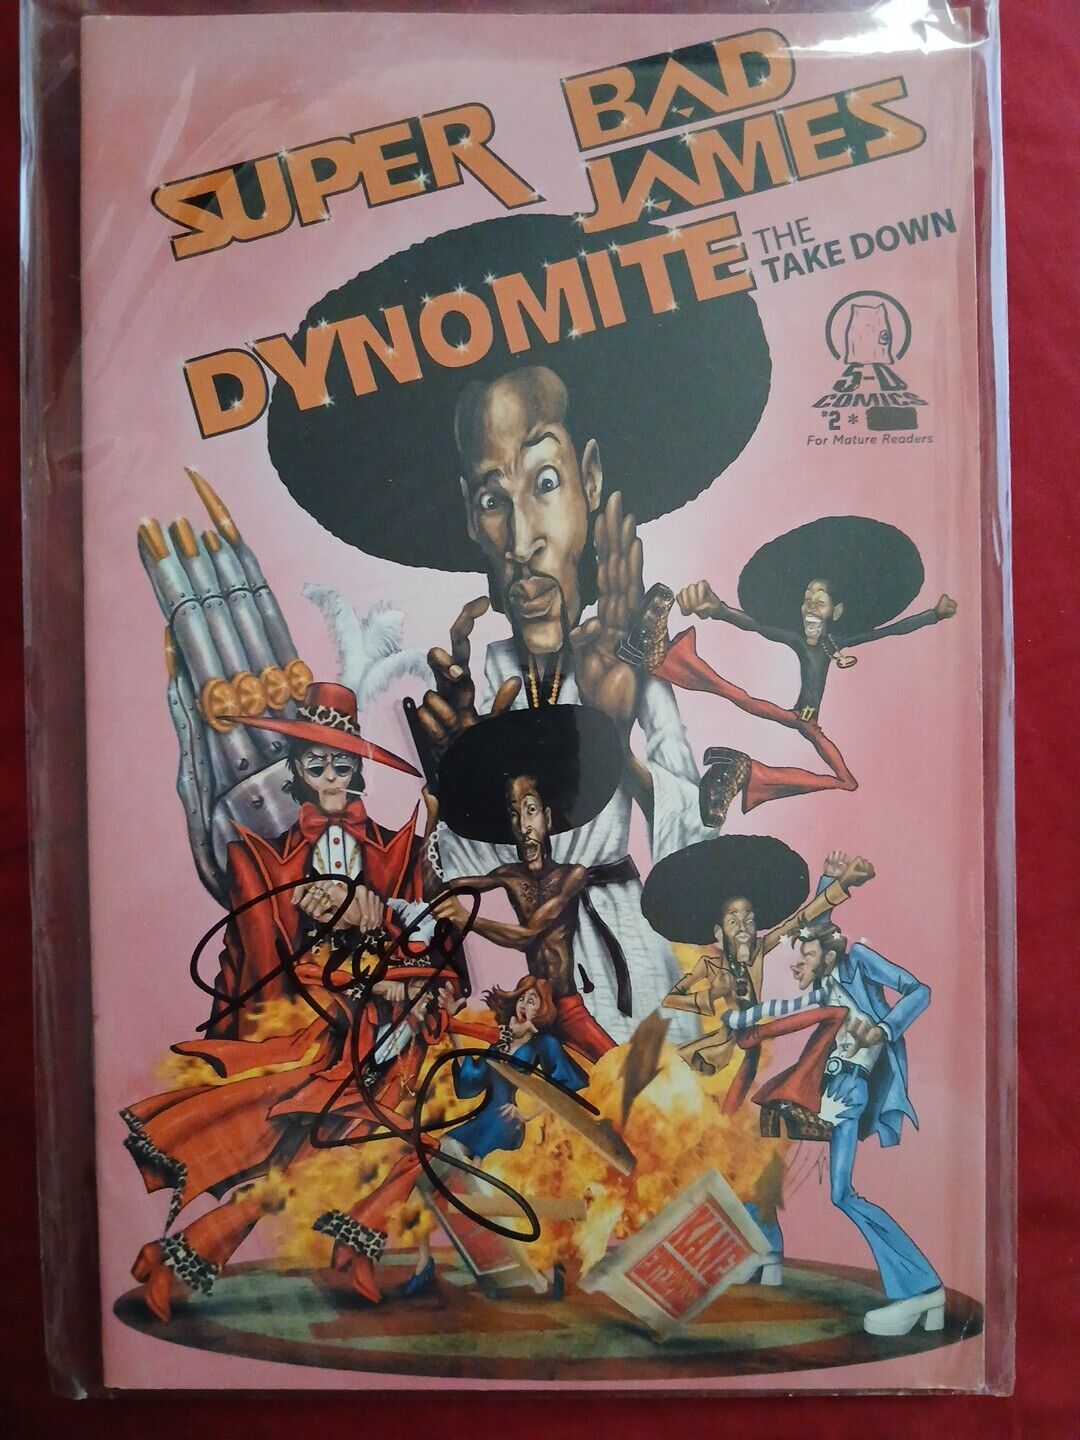 Super Bad James Dynomite #2 SIGNED BY MARLON WAYANS 2006 5-D Comics Autographed